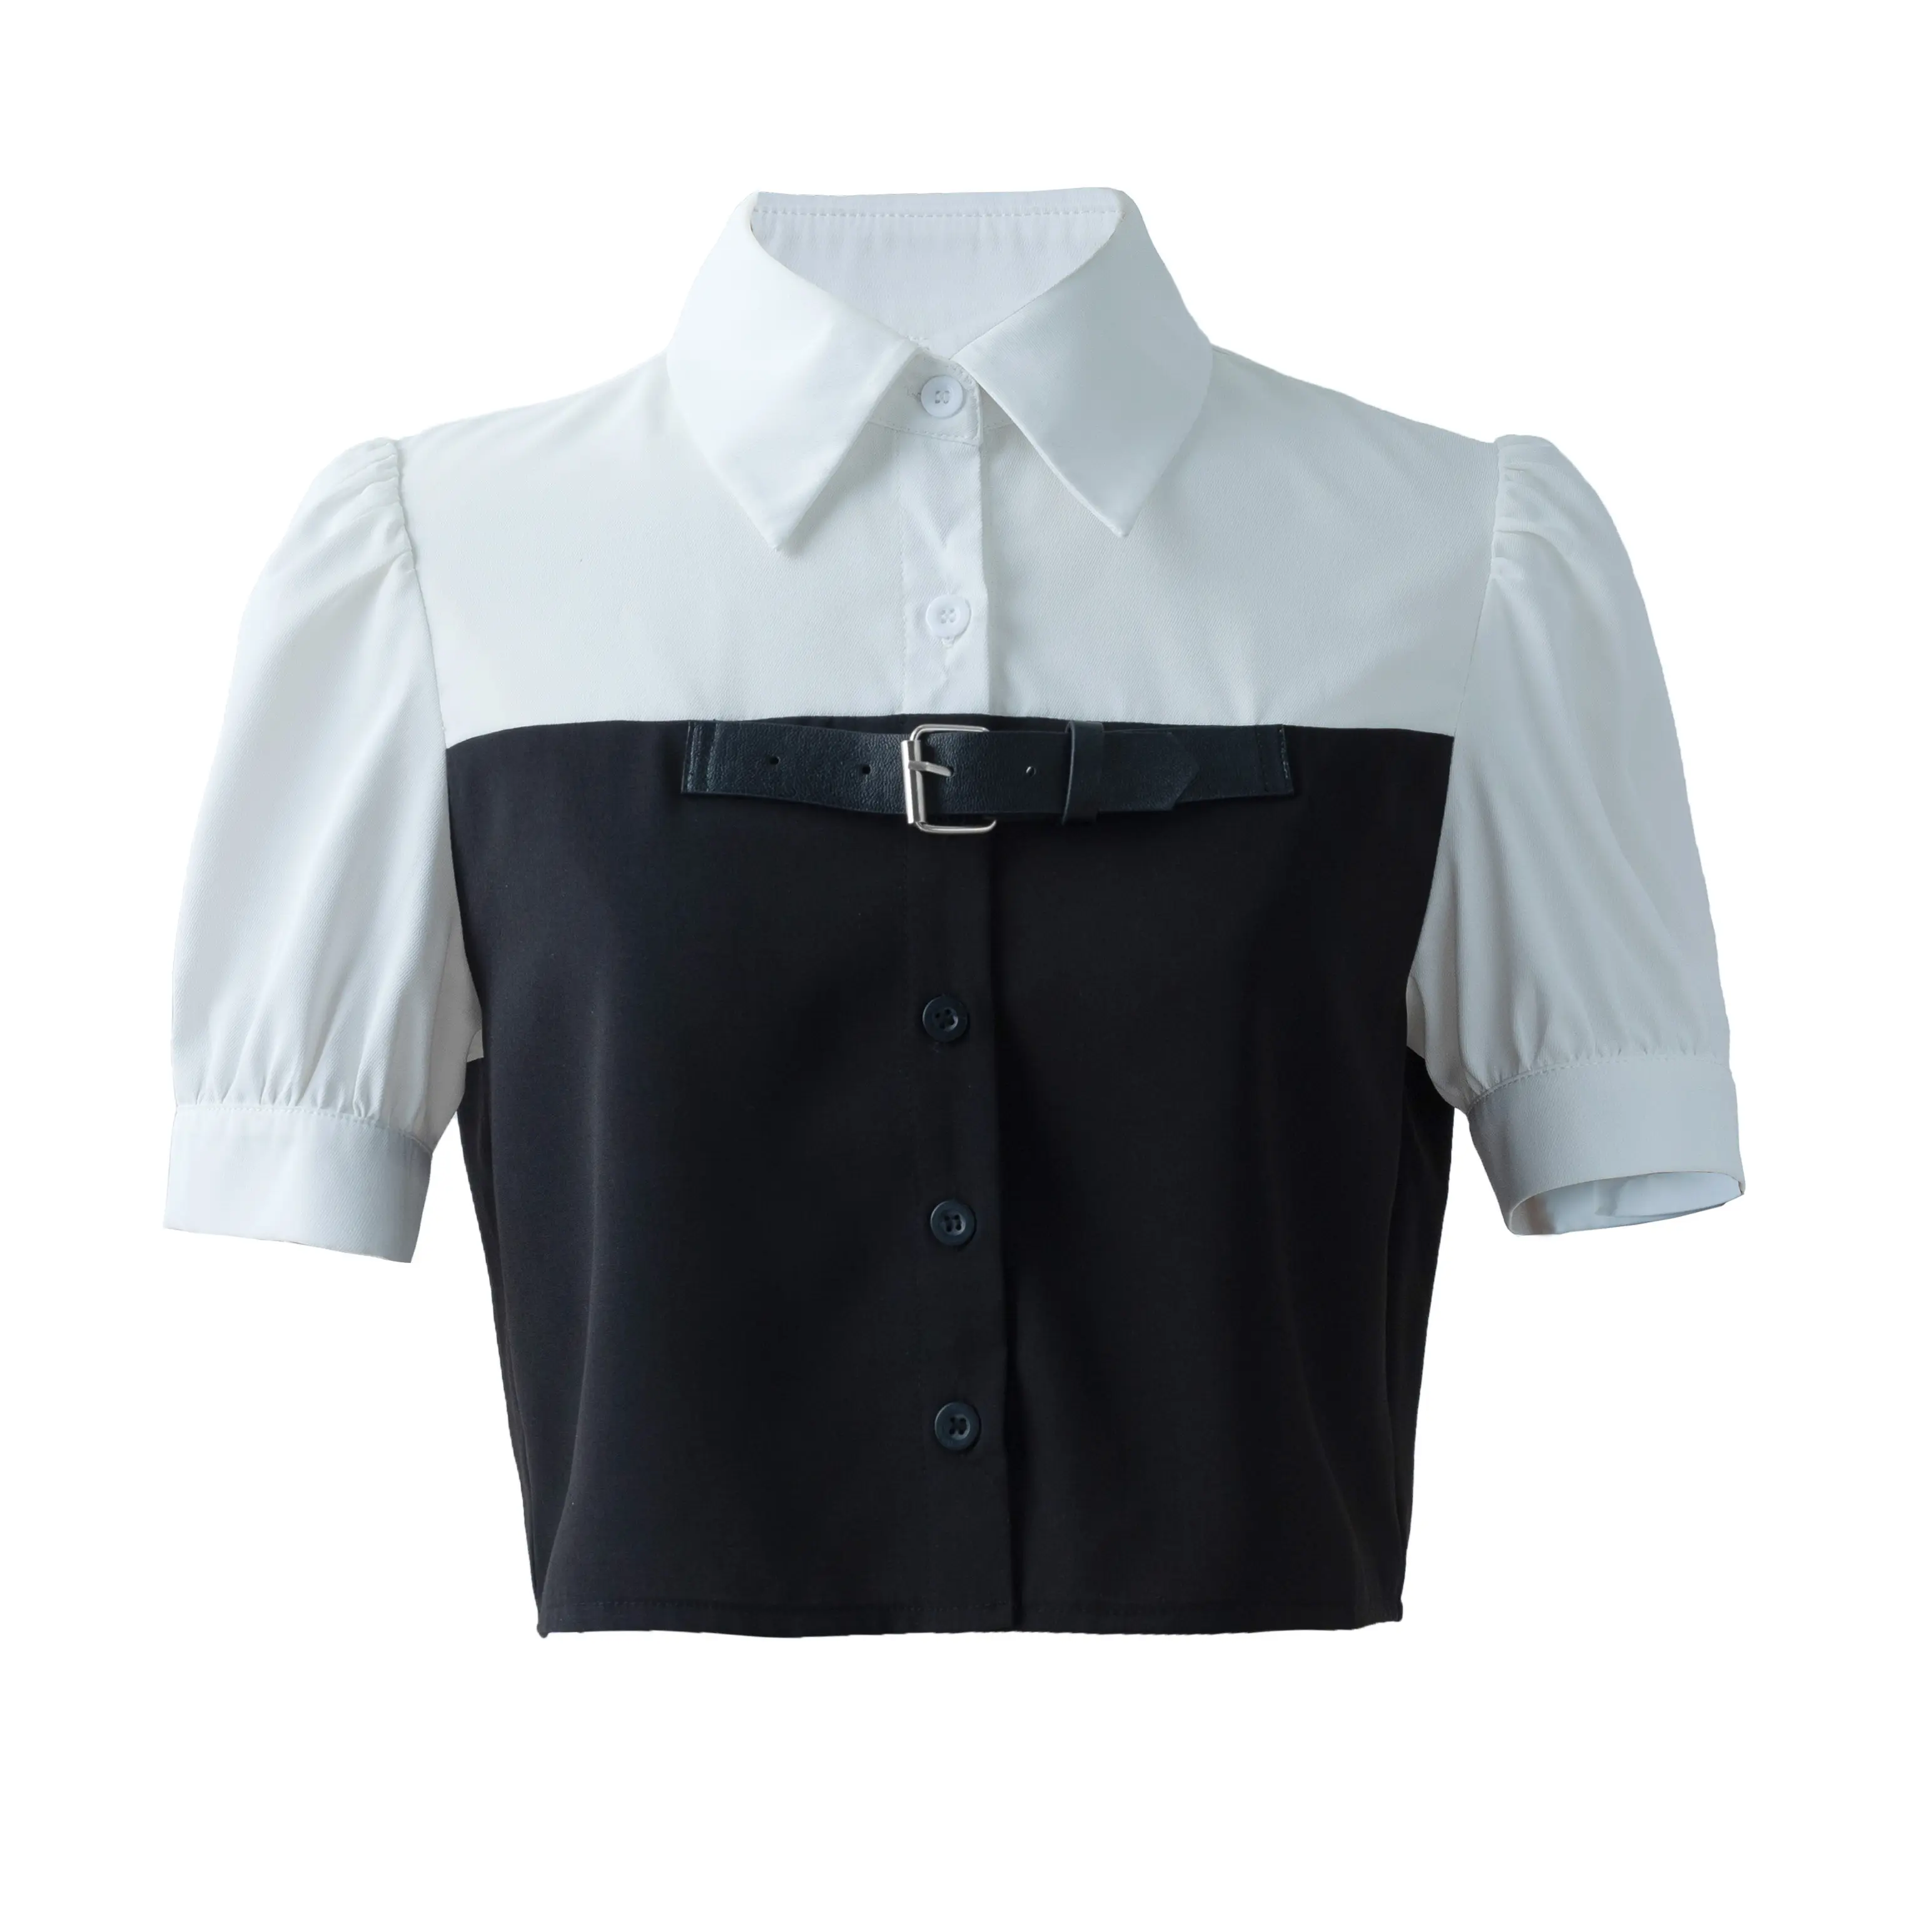 Kadın yazlık gömlek Trendy Casual siyah beyaz Patchwork gömlek Tops kısa kollu cilt dostu